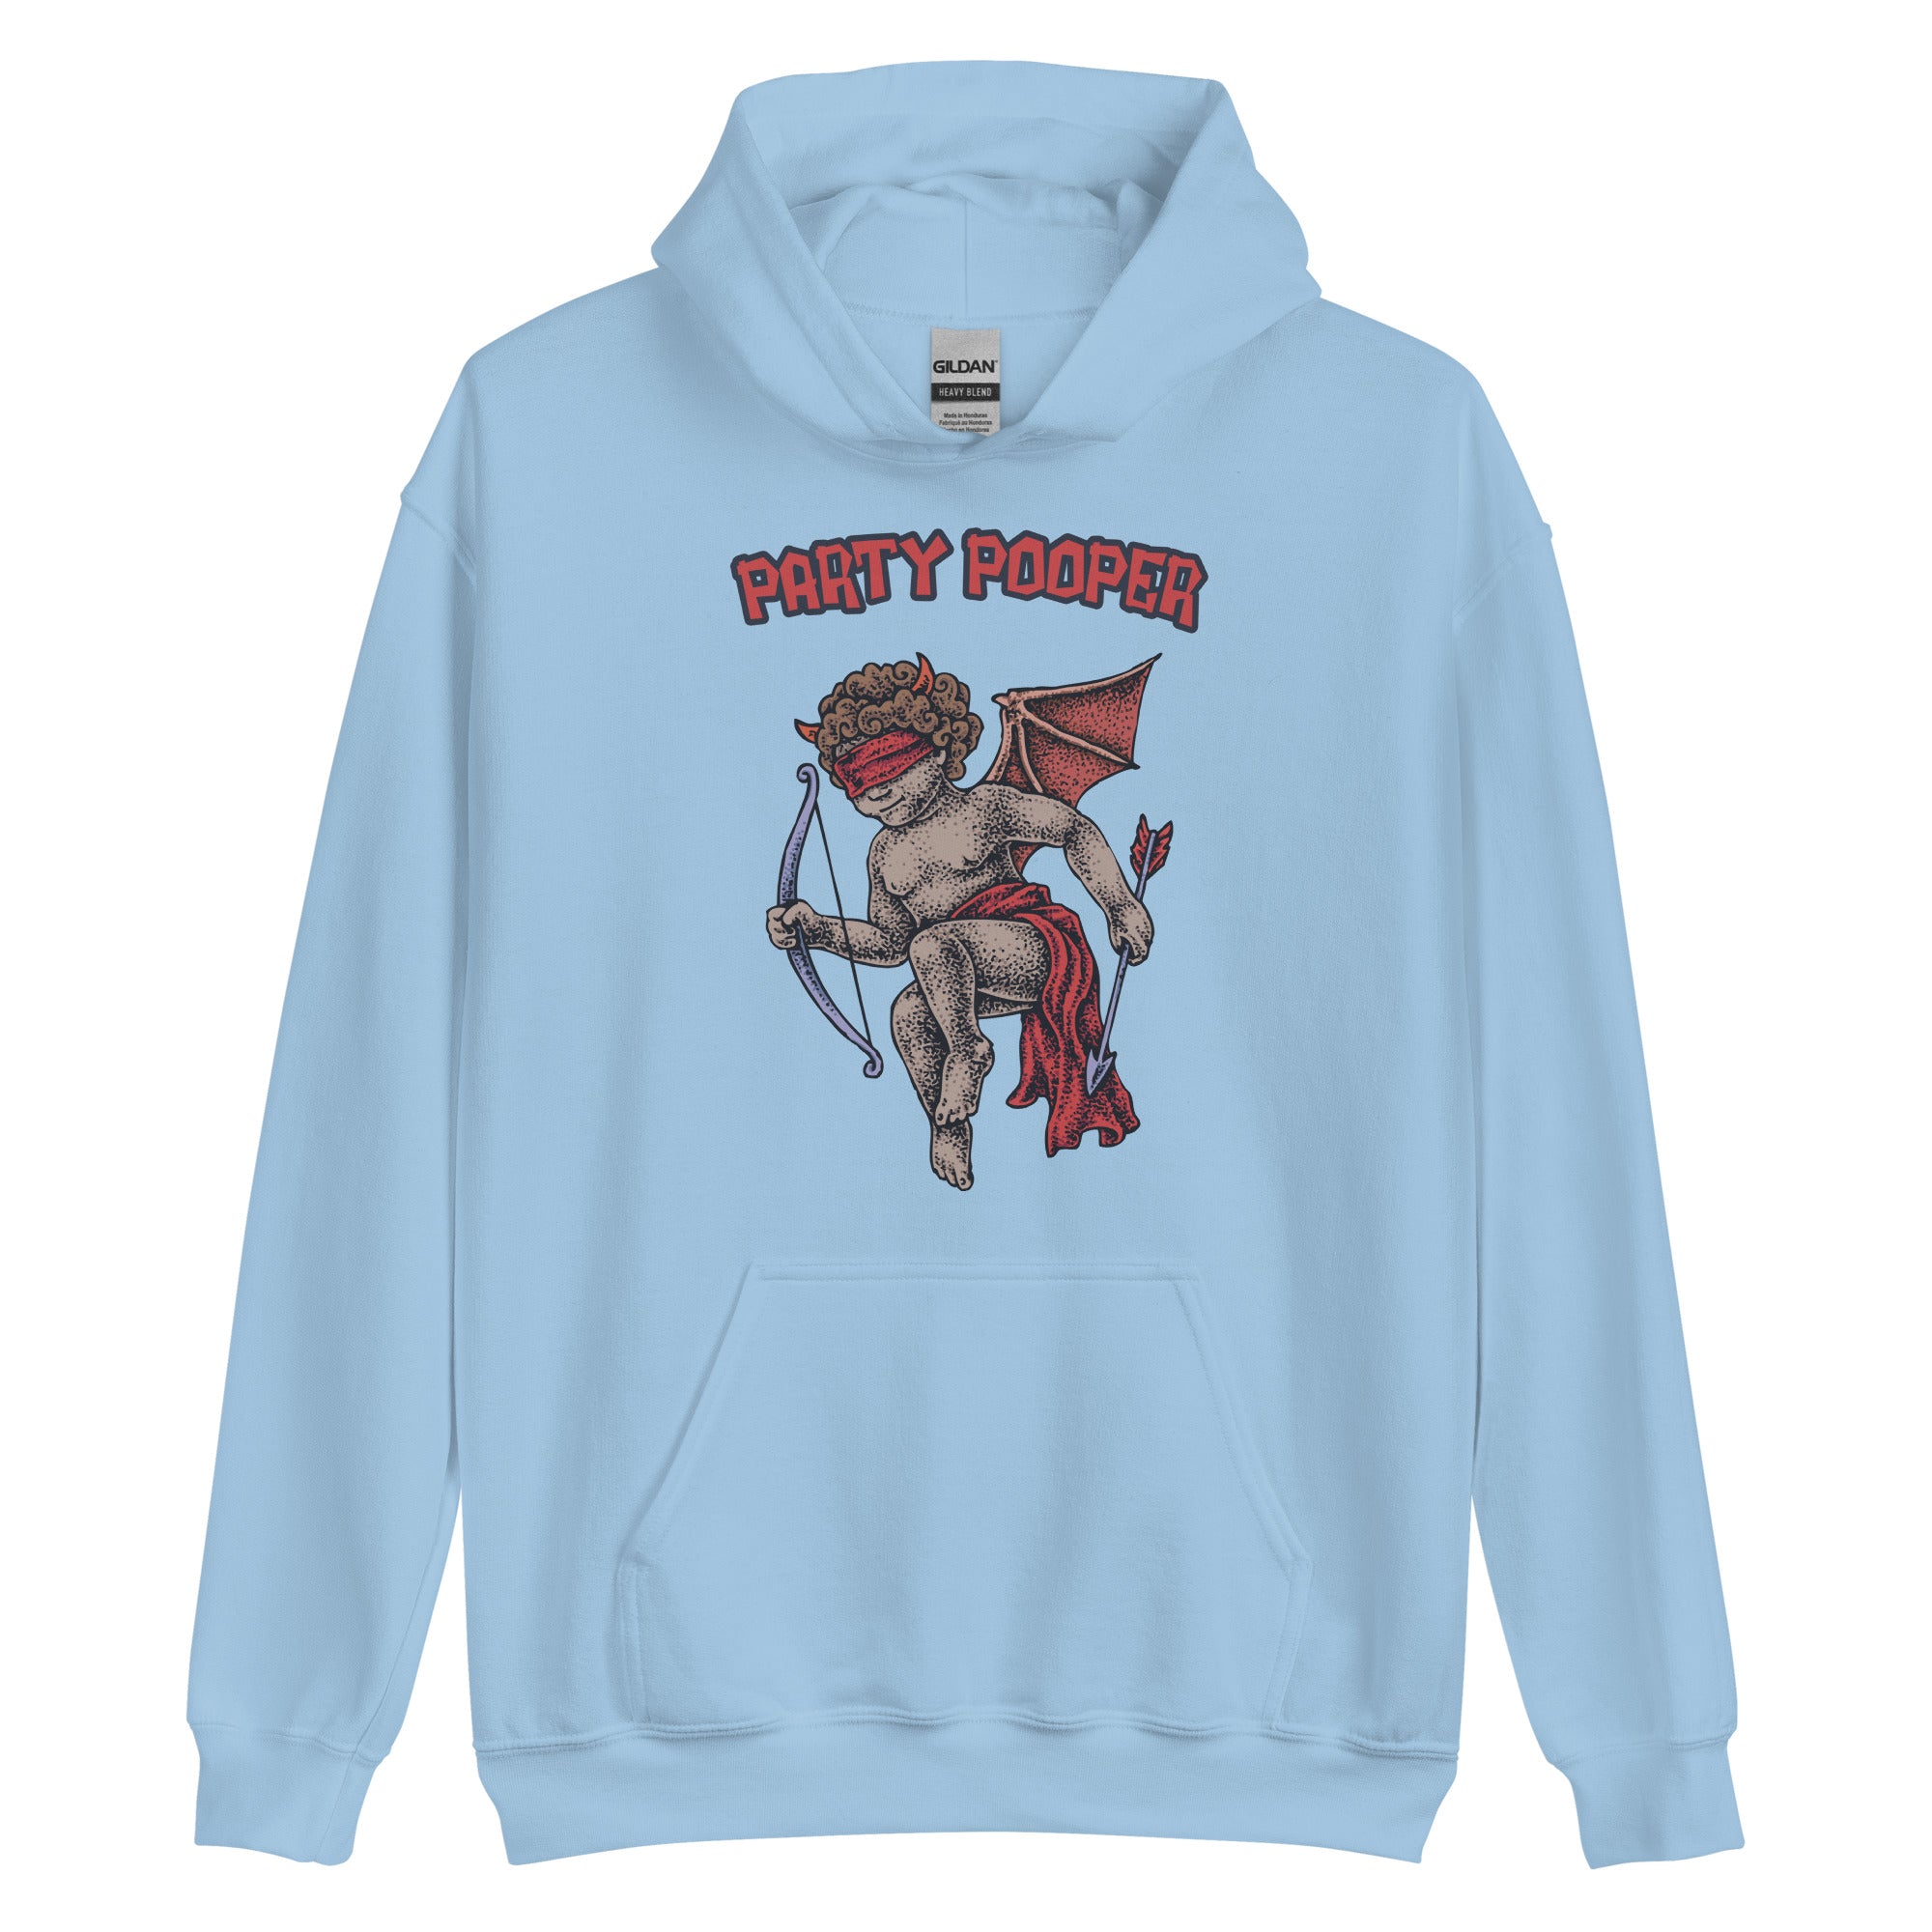 Party Pooper Hoodie | Funny Hooded Sweatshirt Women